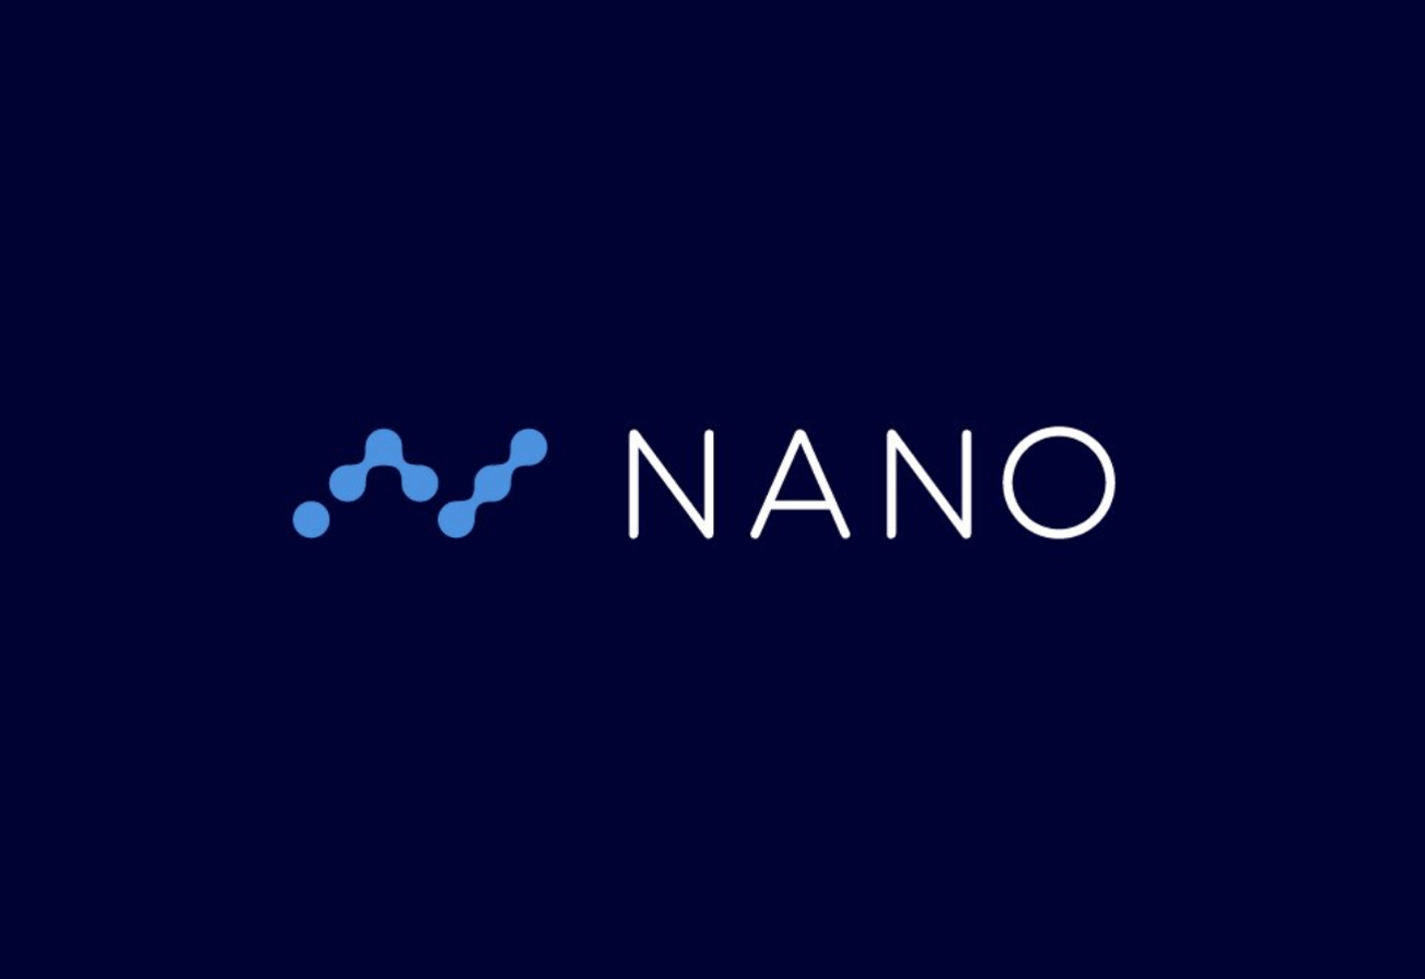 nano-1.png